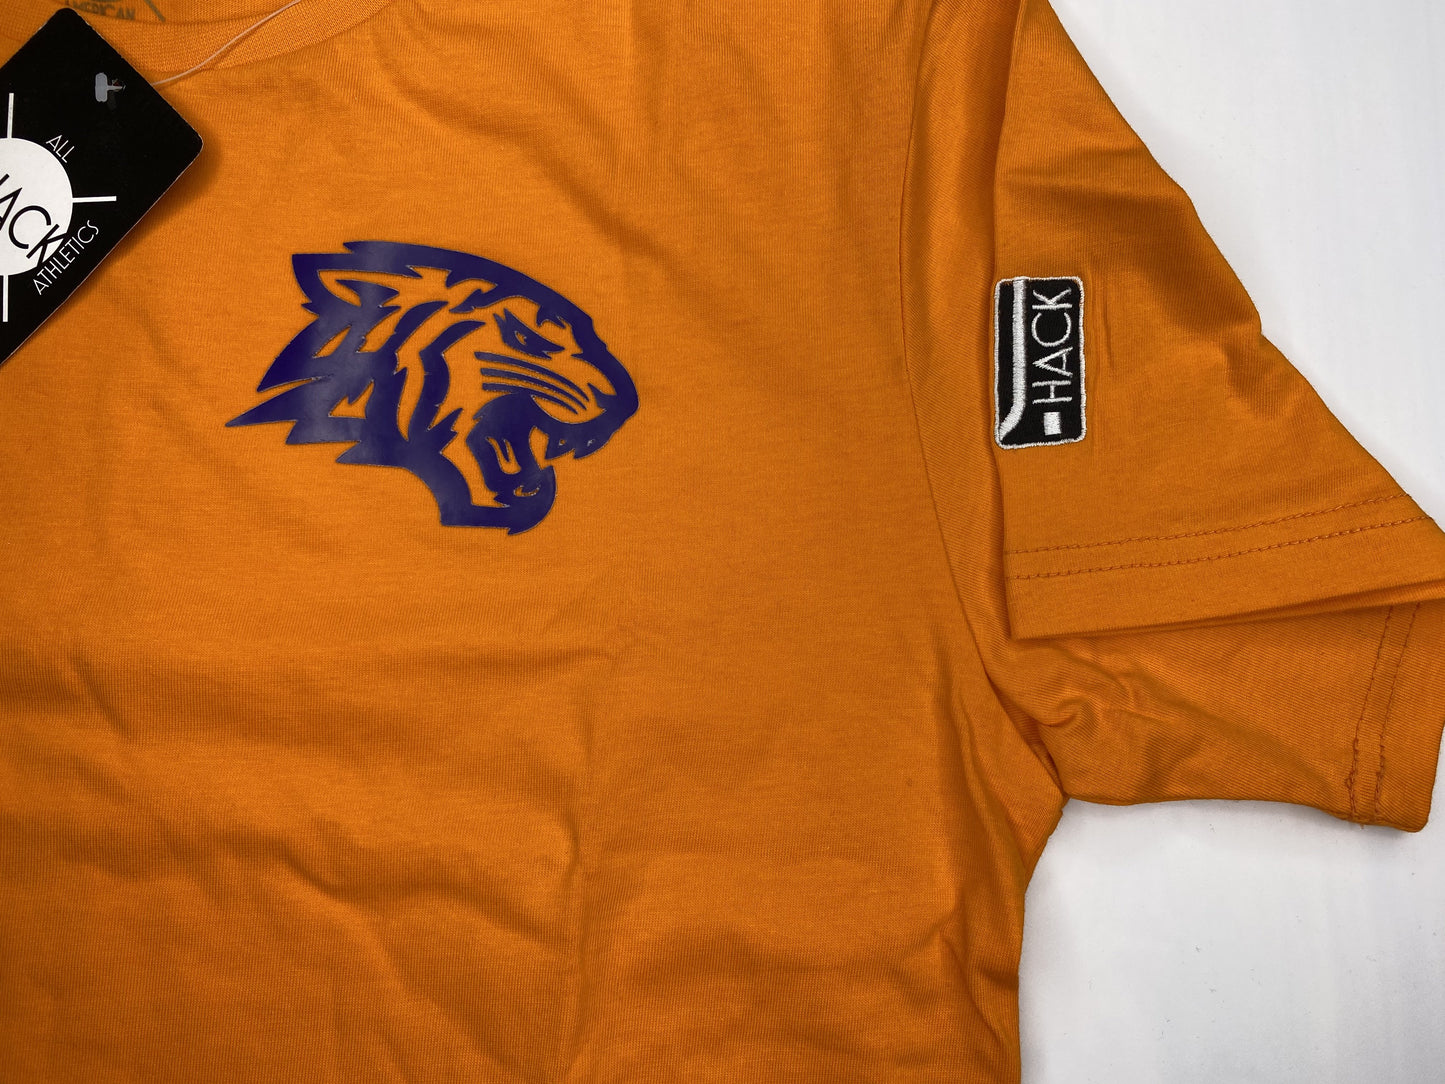 EWC Tshirt Orange | J. Hack Athletics | JimiHack